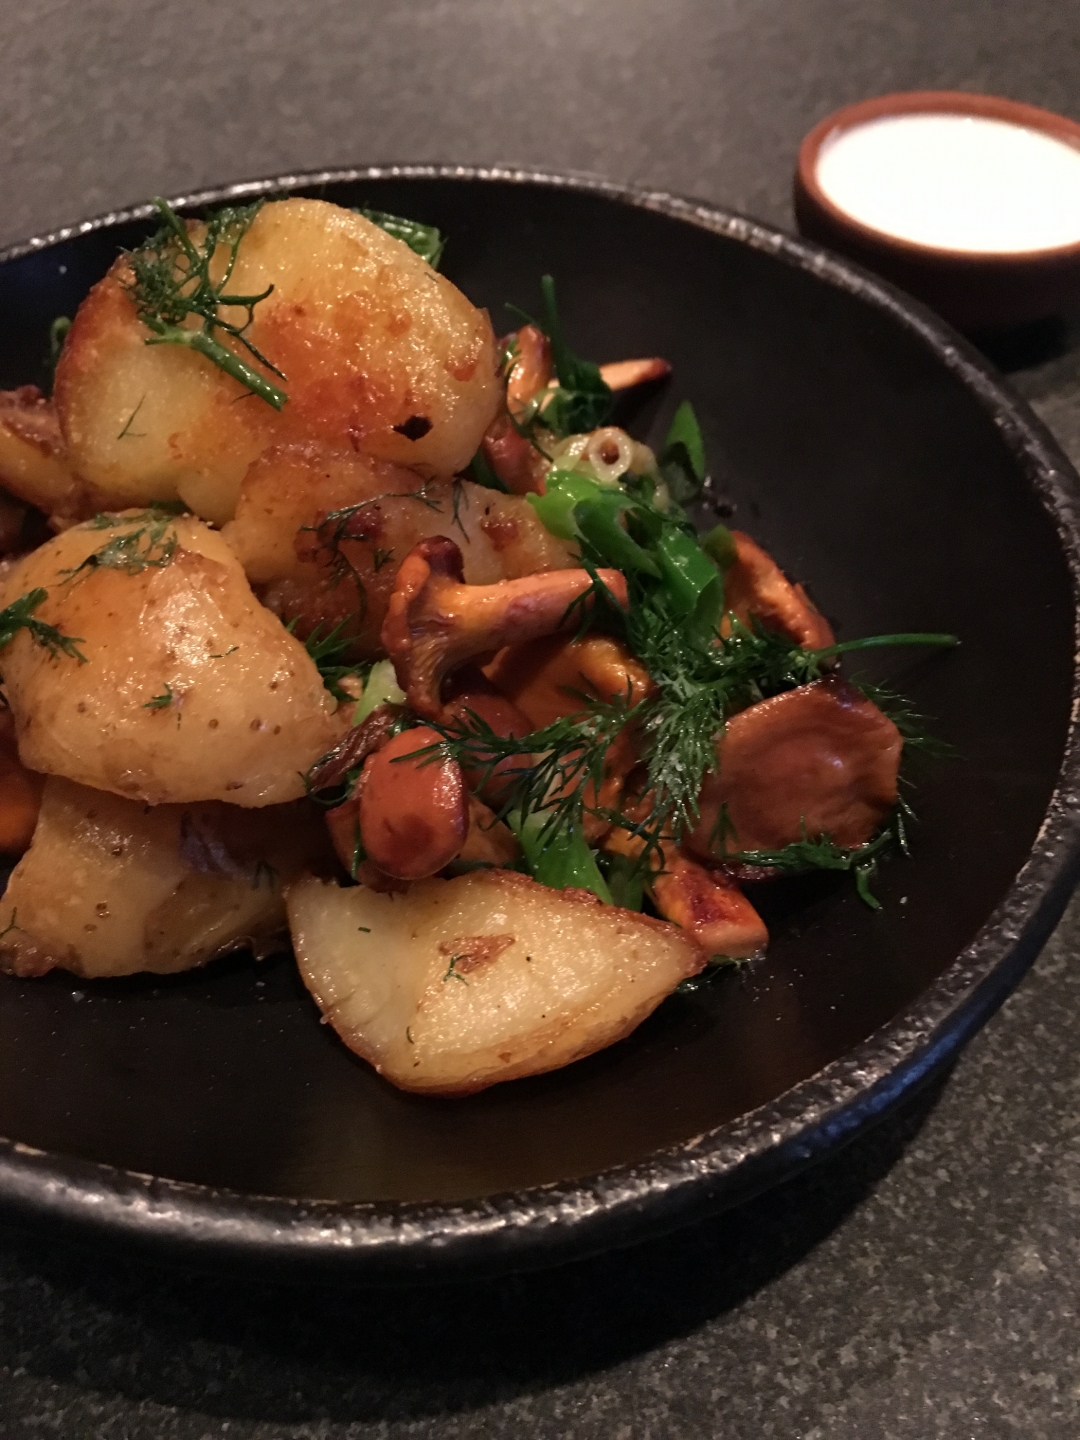 Жареная картошка с лисичками